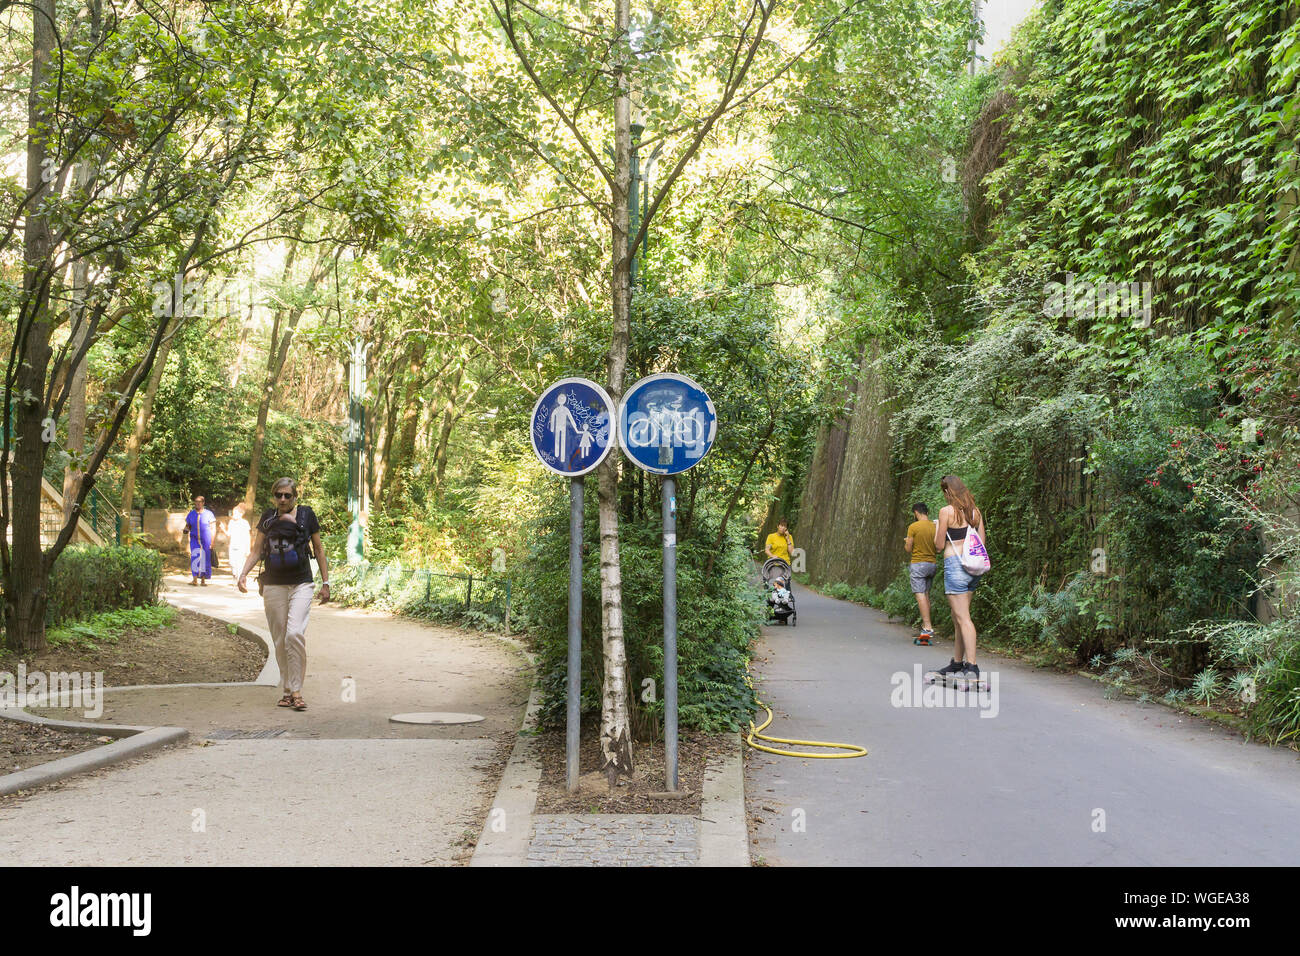 Paris verdure et jardin urbain - les gens se promener le long de la promenade plantée parc surélevé dans le 12e arrondissement de Paris, France, Europe. Banque D'Images